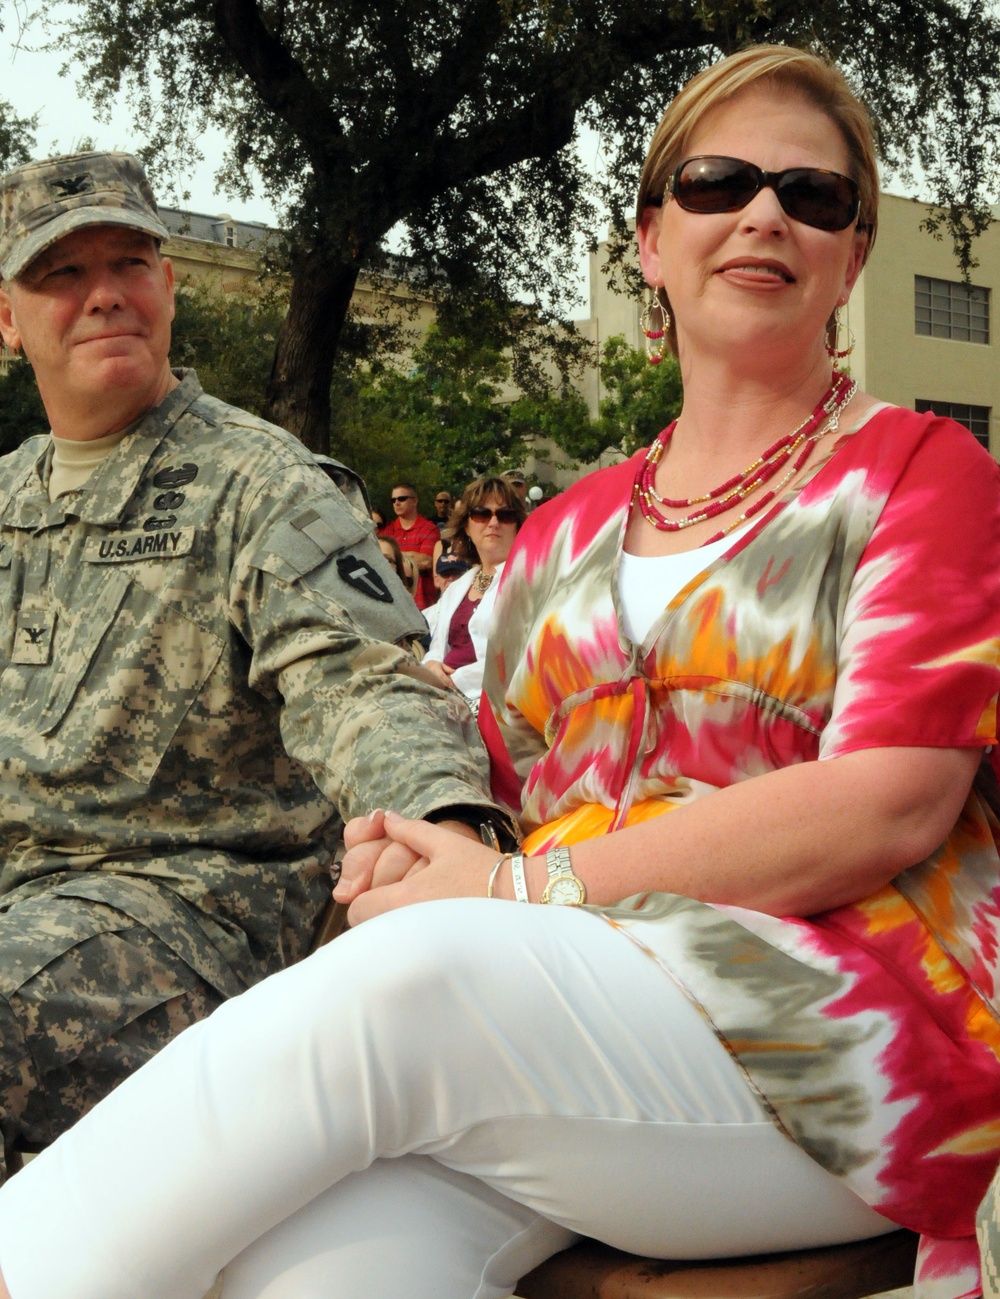 Houston-based brigade appreciates families